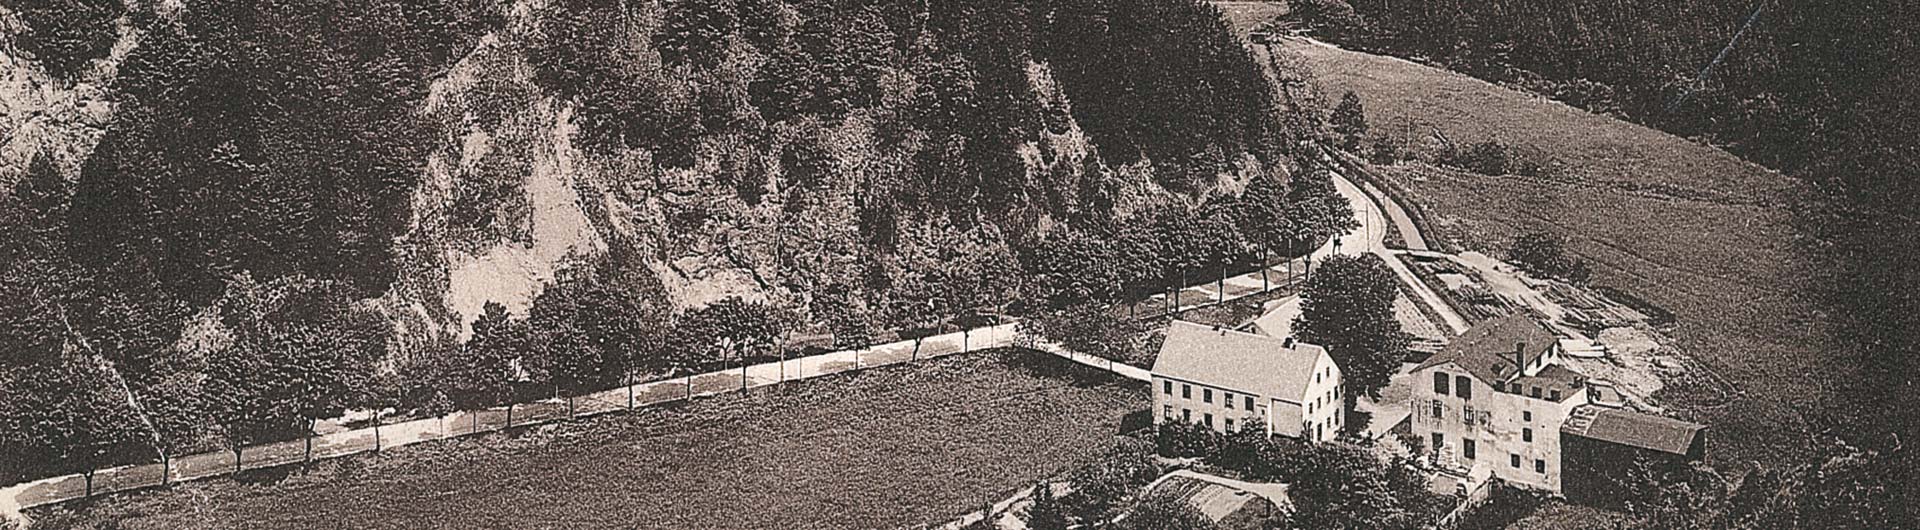 Mittelndorfer Mühle - historische Aufnahme um 1896